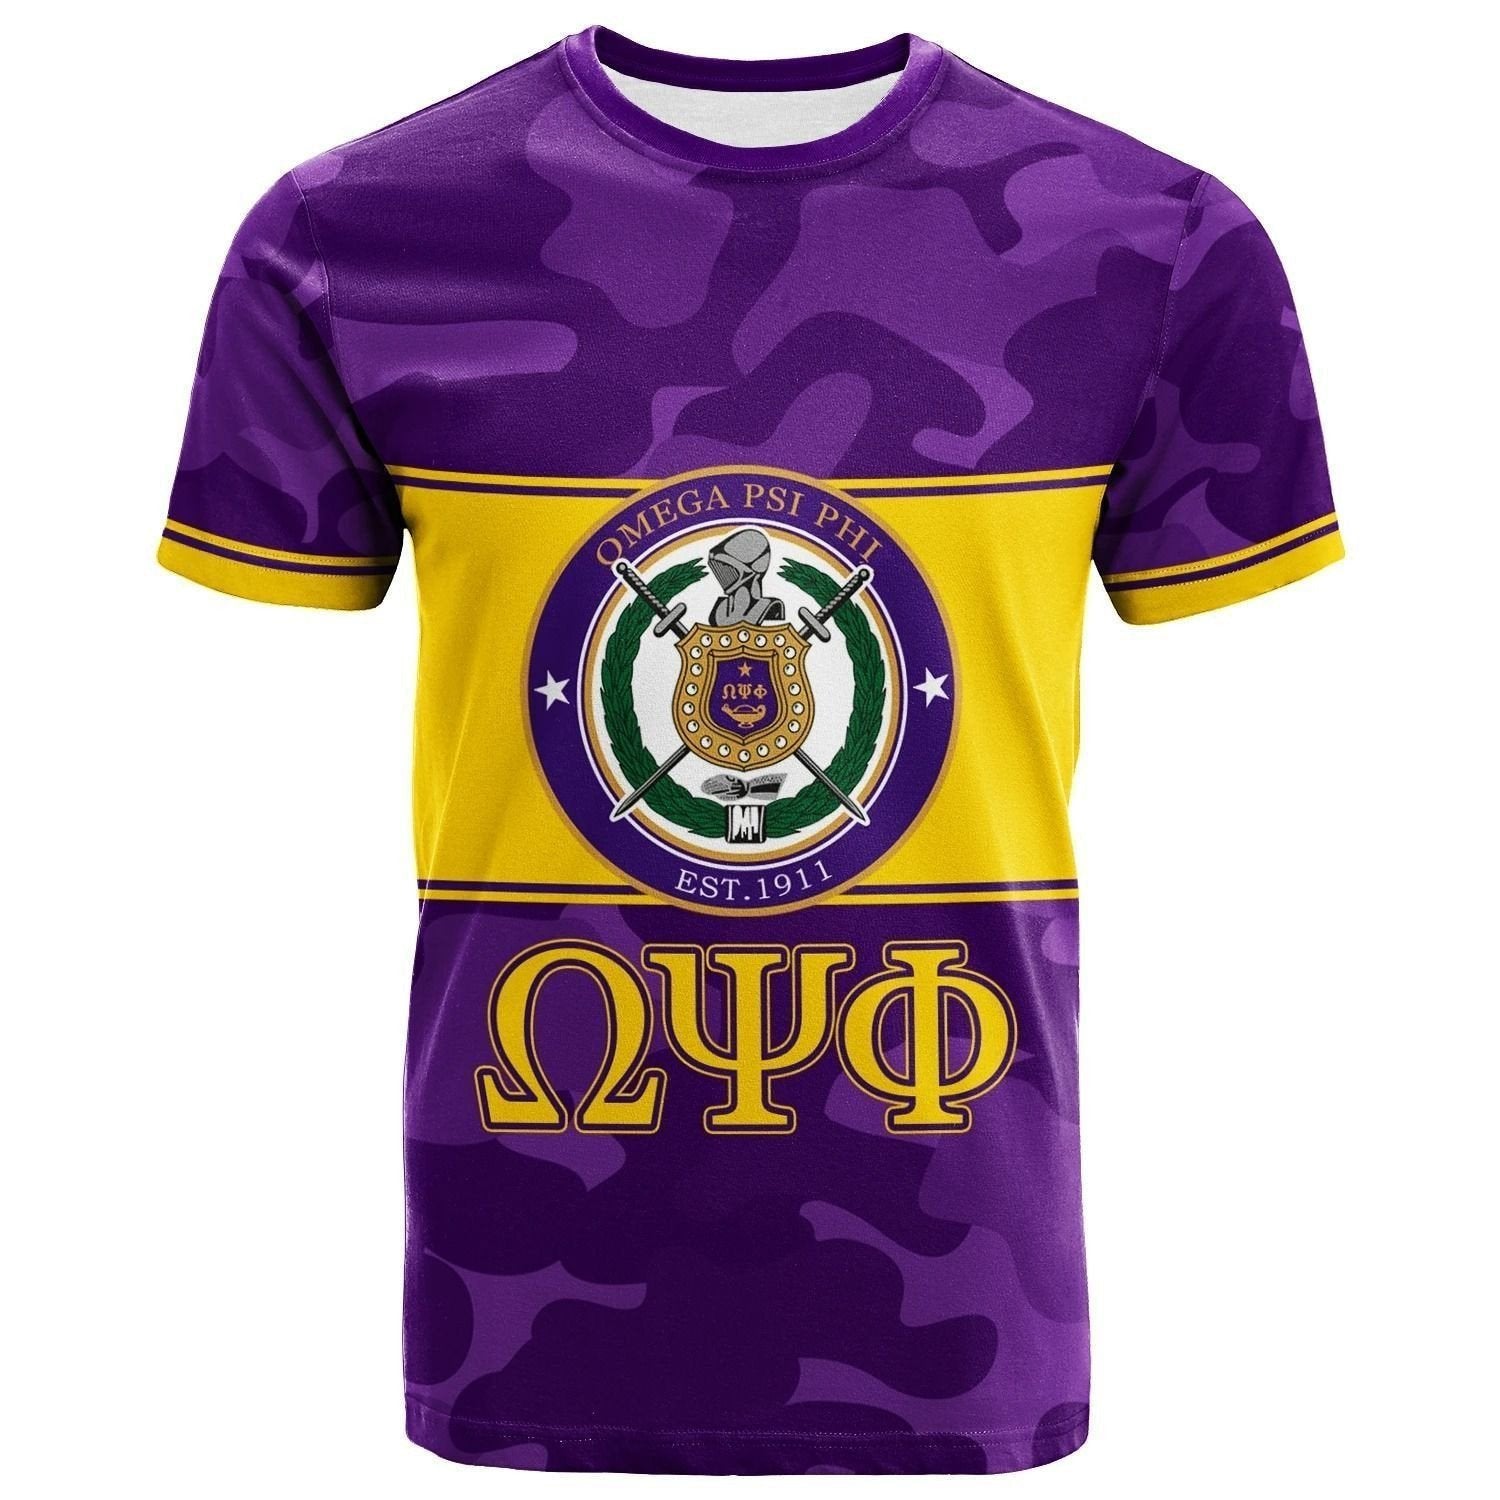 Fraternity Tshirt – Omega Psi Phi Camo Version Tshirt